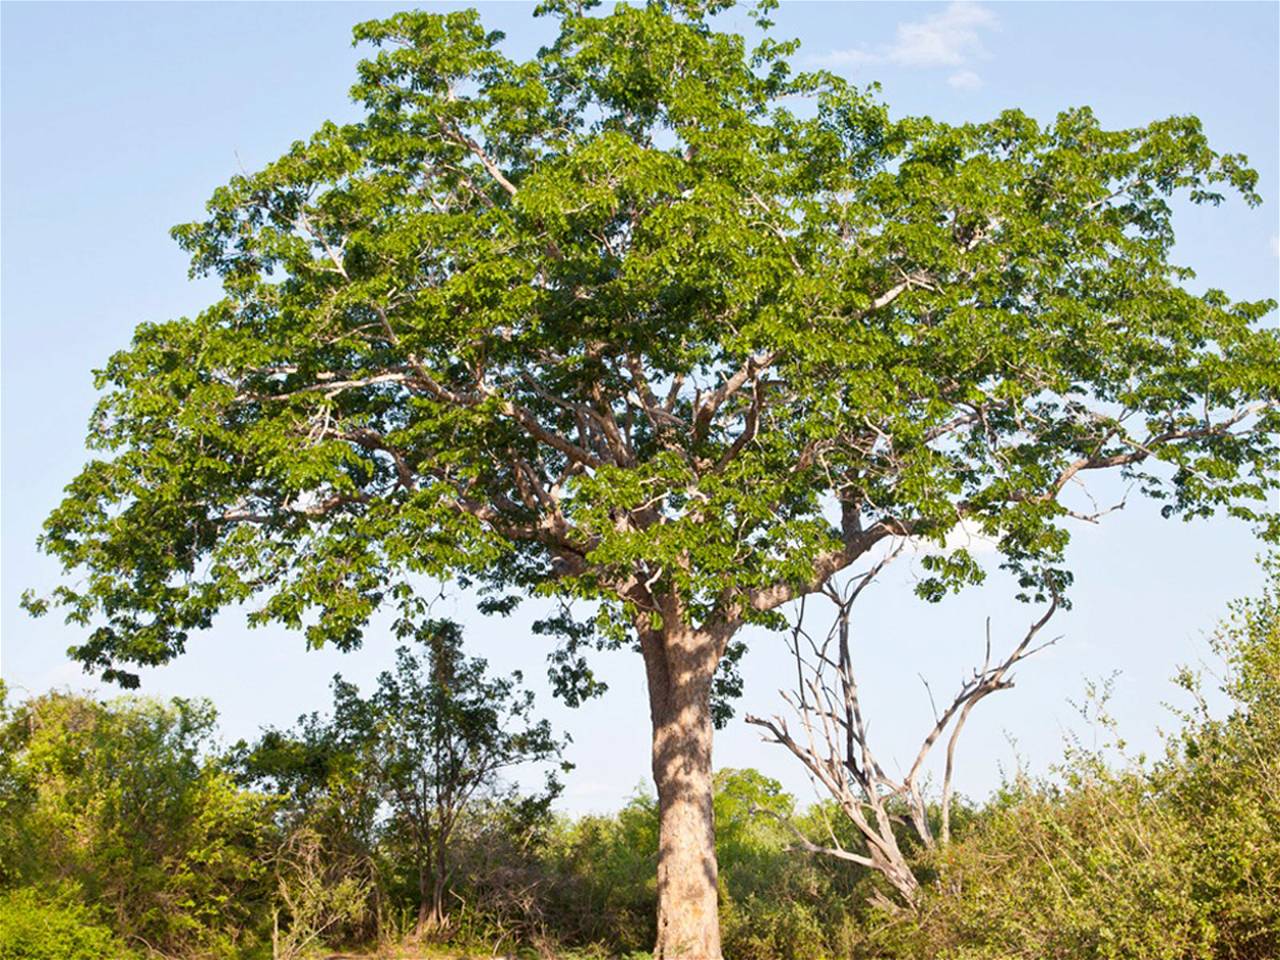 Mahogany tree is known to be very precious.